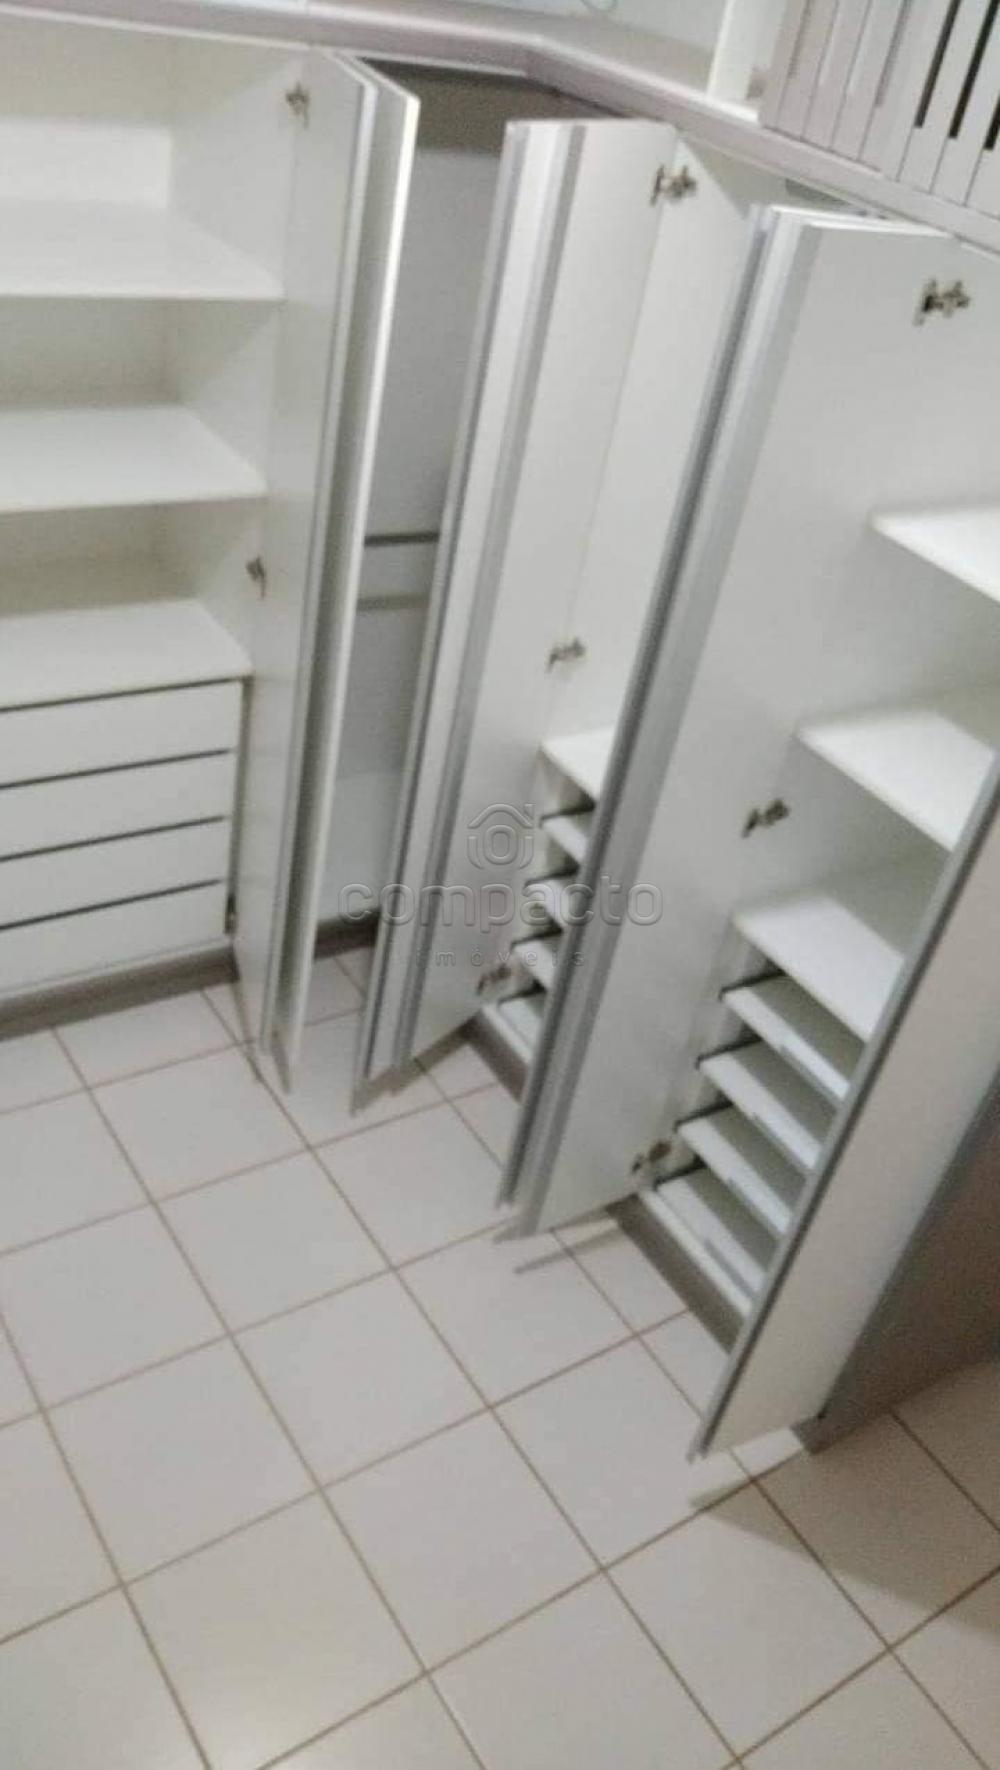 Alugar Apartamento / Padrão em São José do Rio Preto R$ 1.250,00 - Foto 6